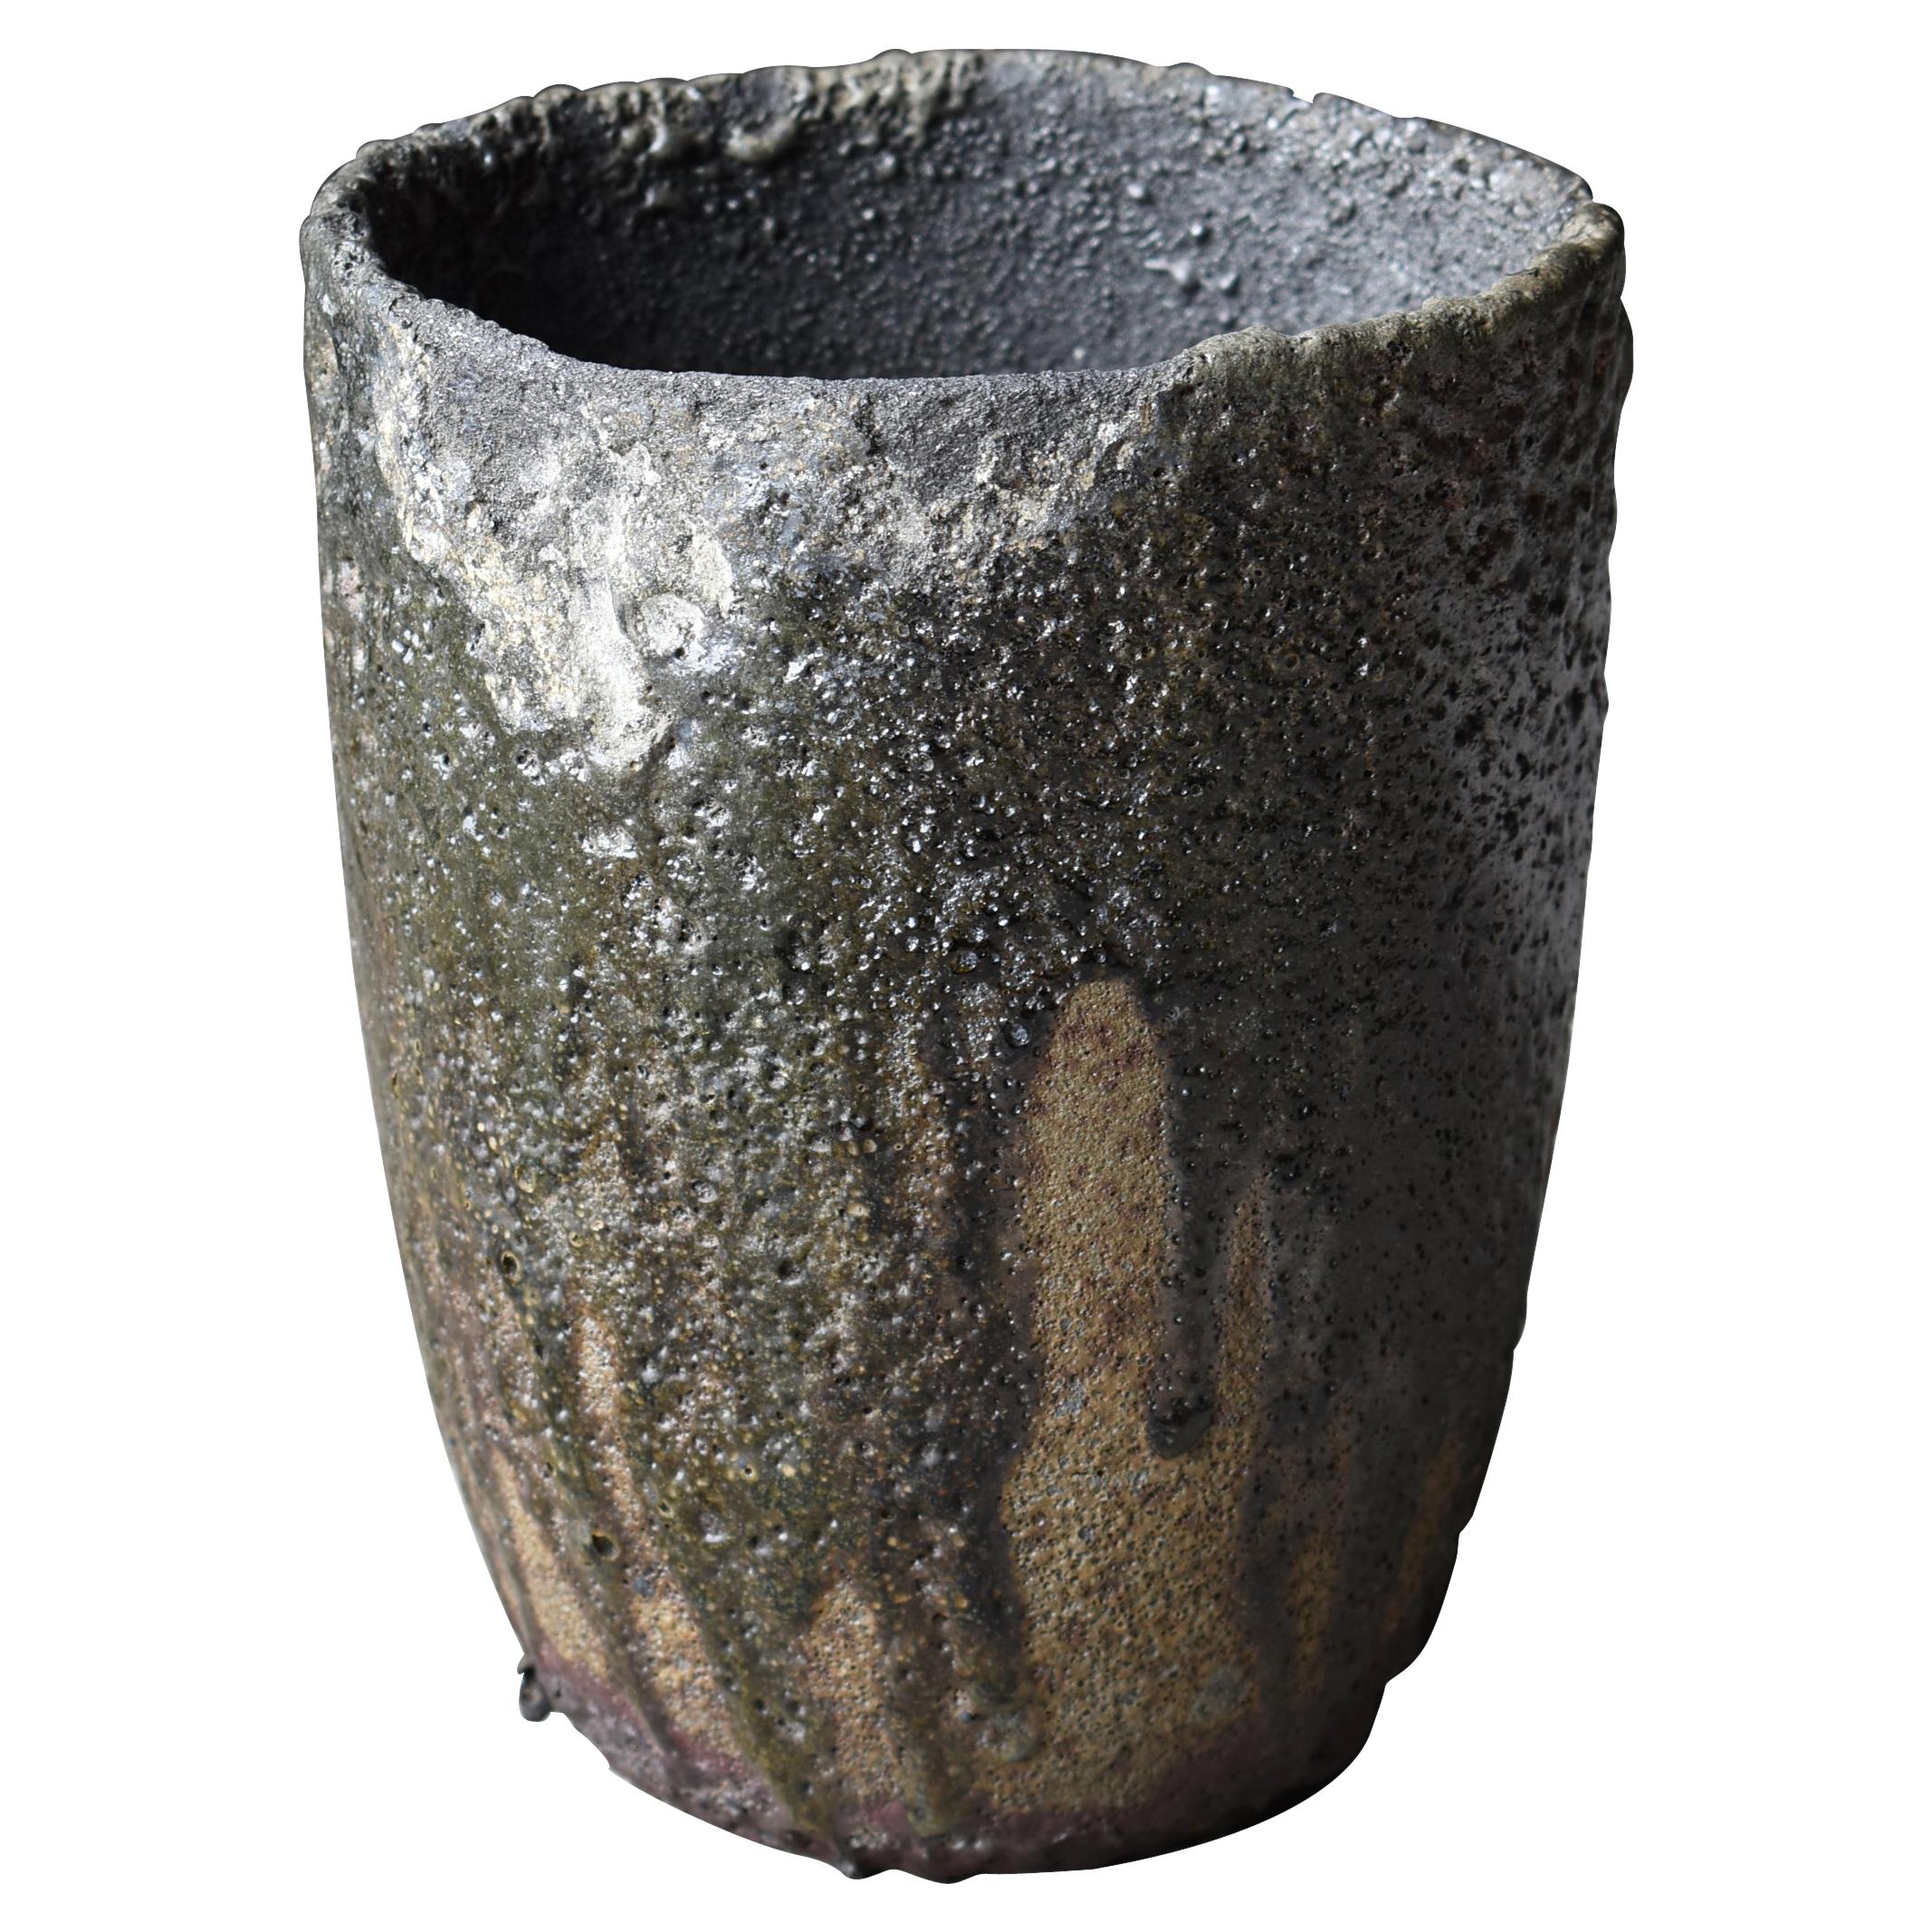 Old Ceramic Vases - 5 For Sale on 1stDibs | old vases